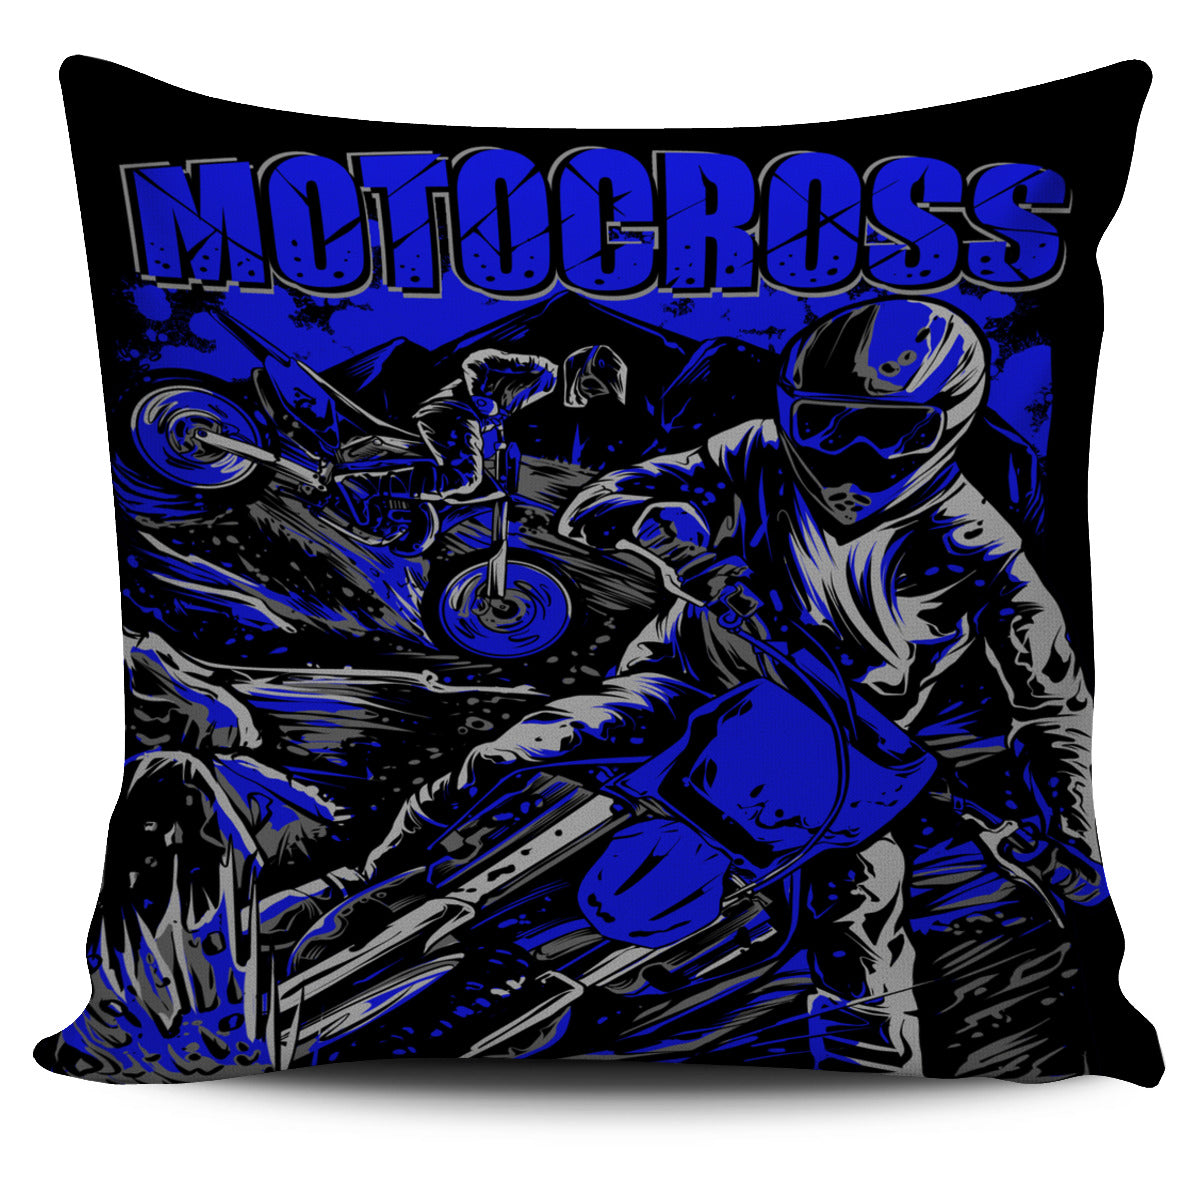 Motocross Pillow Cover Blue